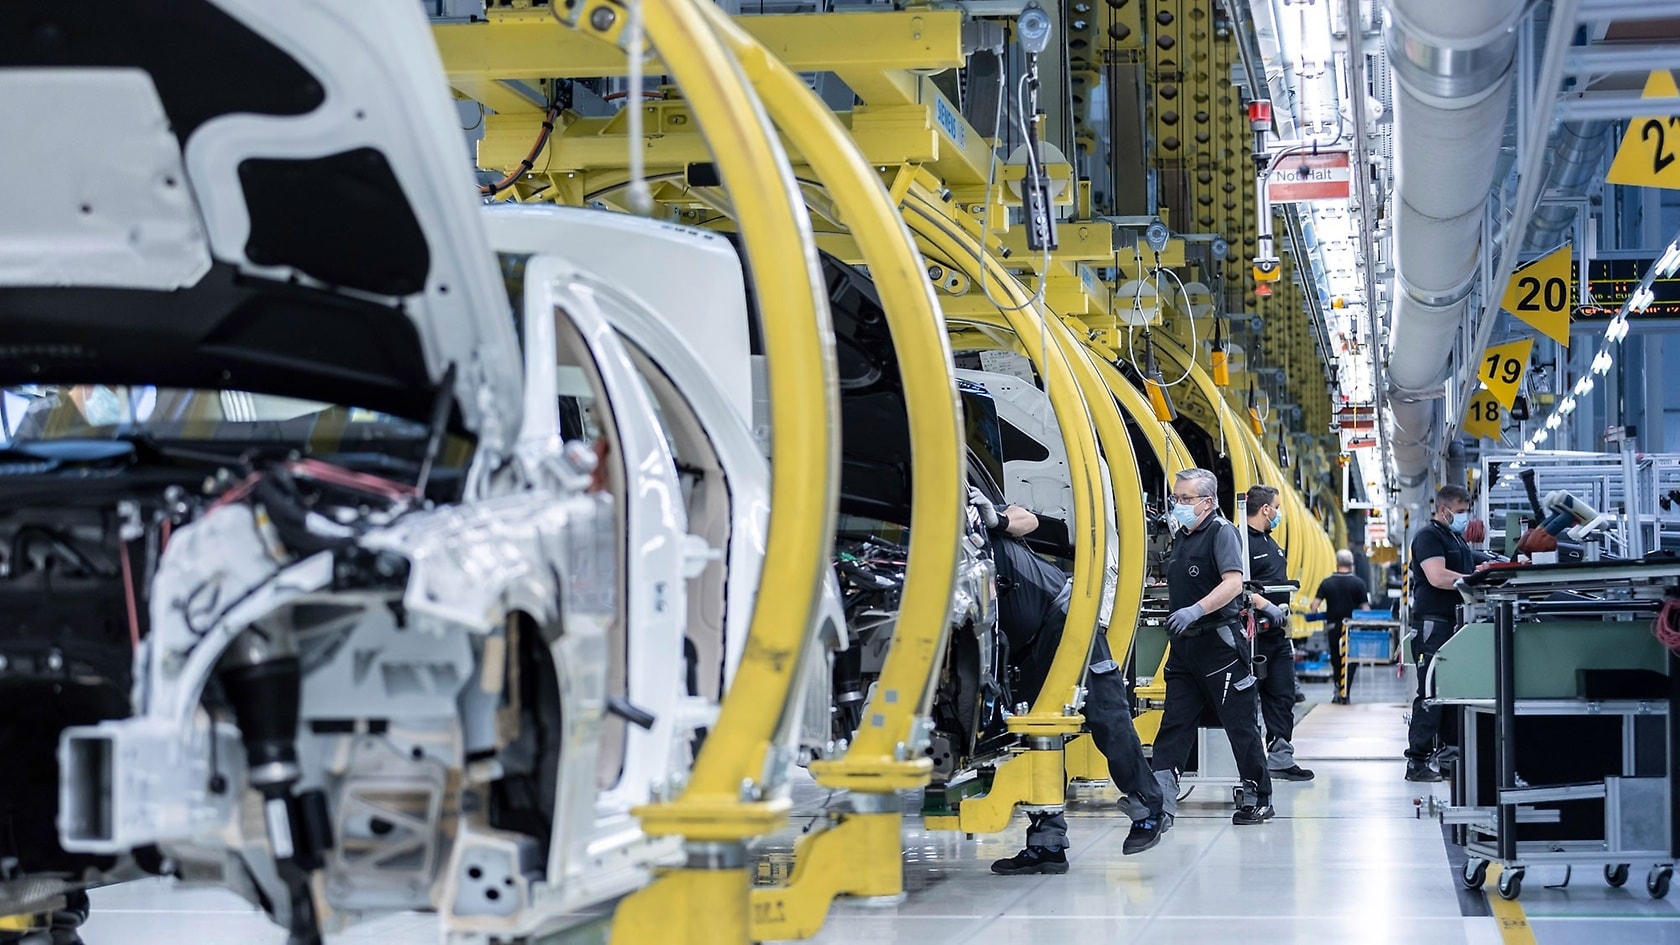 Wiederanlauf bei Mercedes-Benz nach Produktionspause: Die Produktion im Mercedes-Benz Werk Sindelfingen läuft sukzess ive hoch - mit umfangreichen Schutzmaßnahmen für die Mitarbeiter.